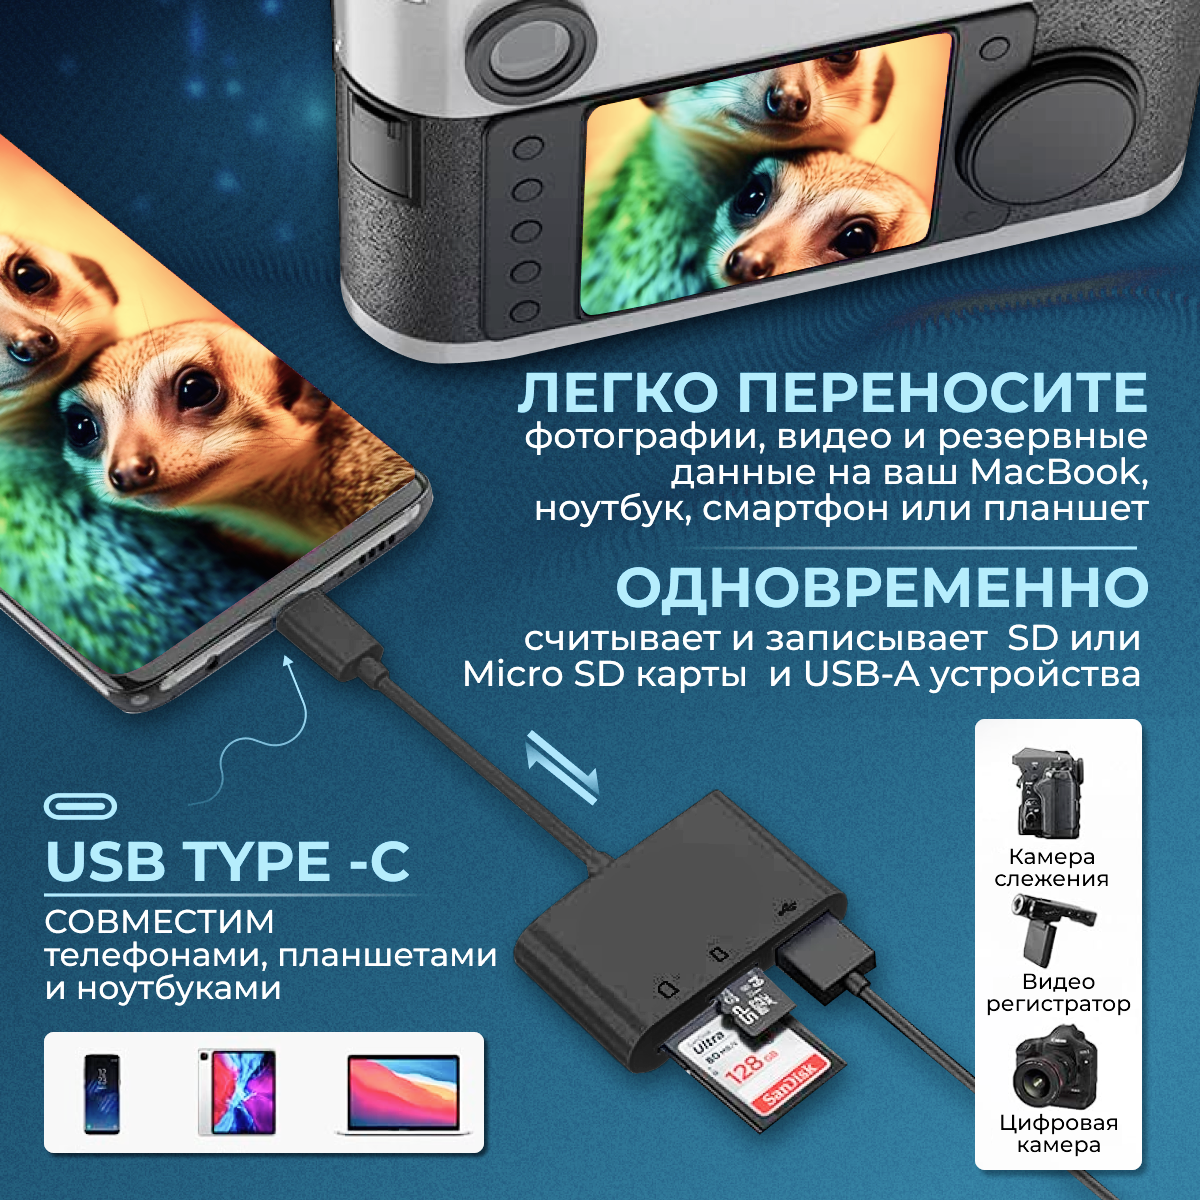 Картридер 5 в 1 универсальный USB Type C Micro USB, устройство для чтения SD-карт памяти, U-диск, OTG адаптер, конвертер для планшетов